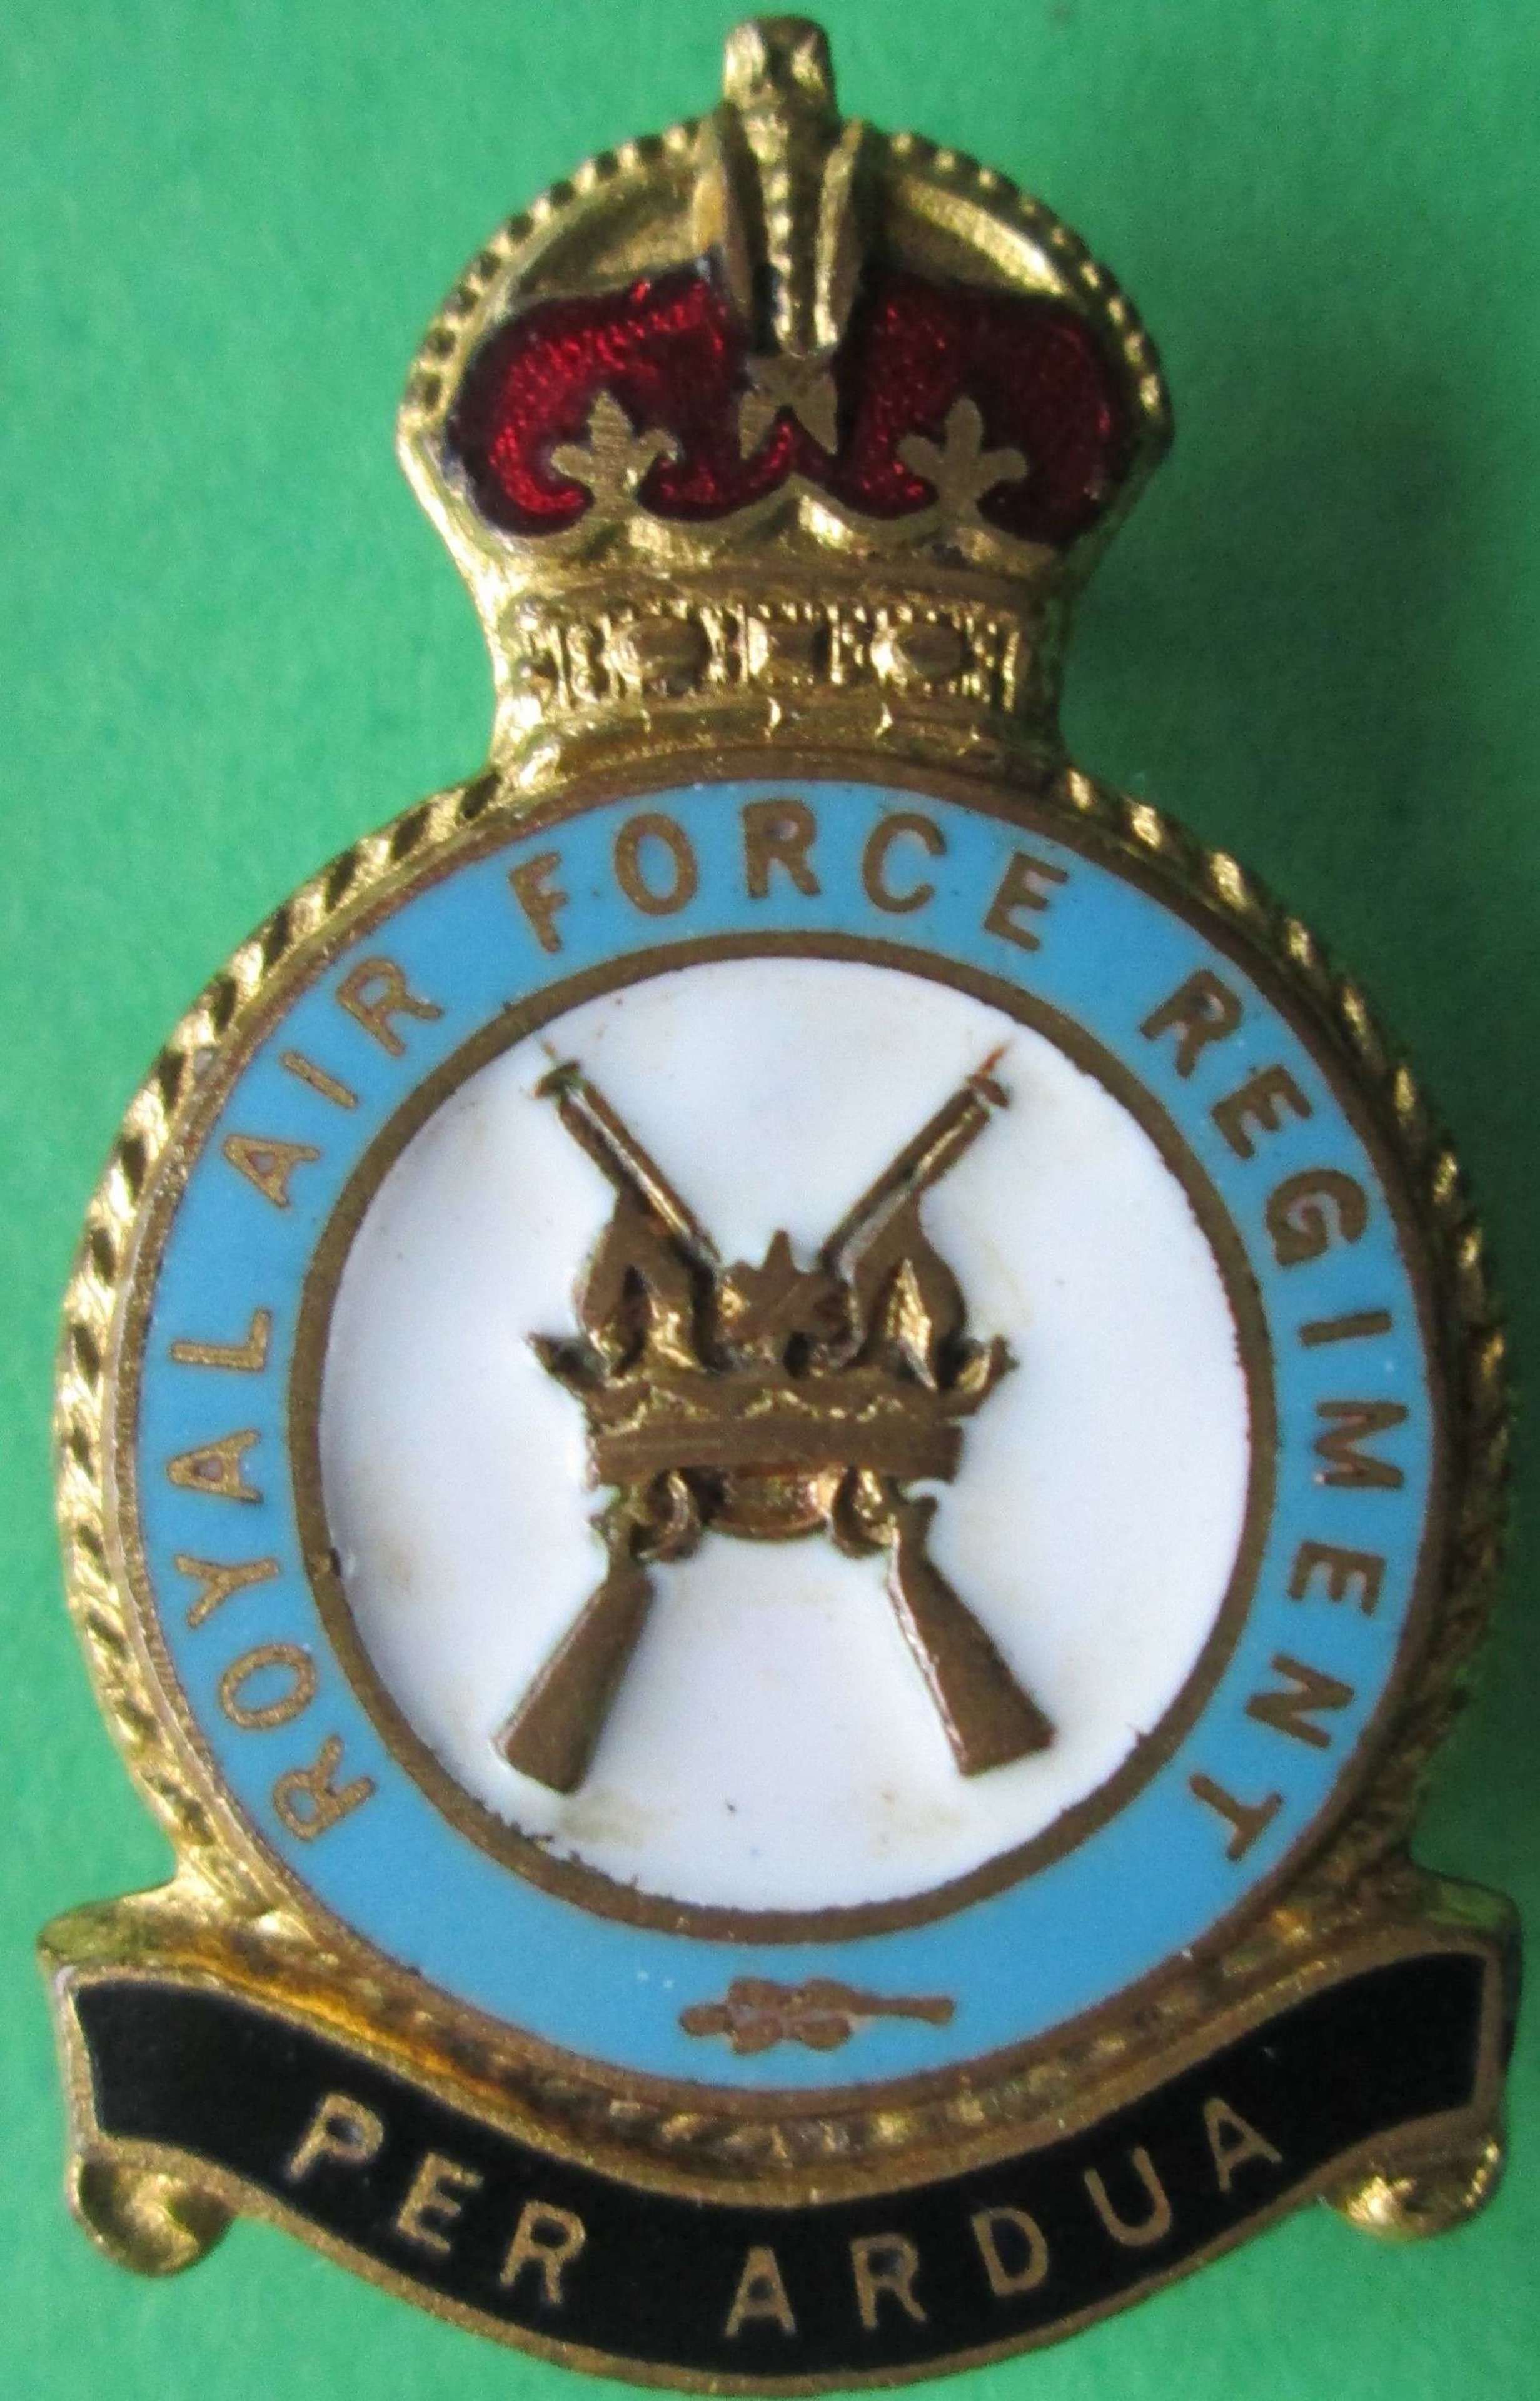 A RAF REGIMENT PIN BADGE